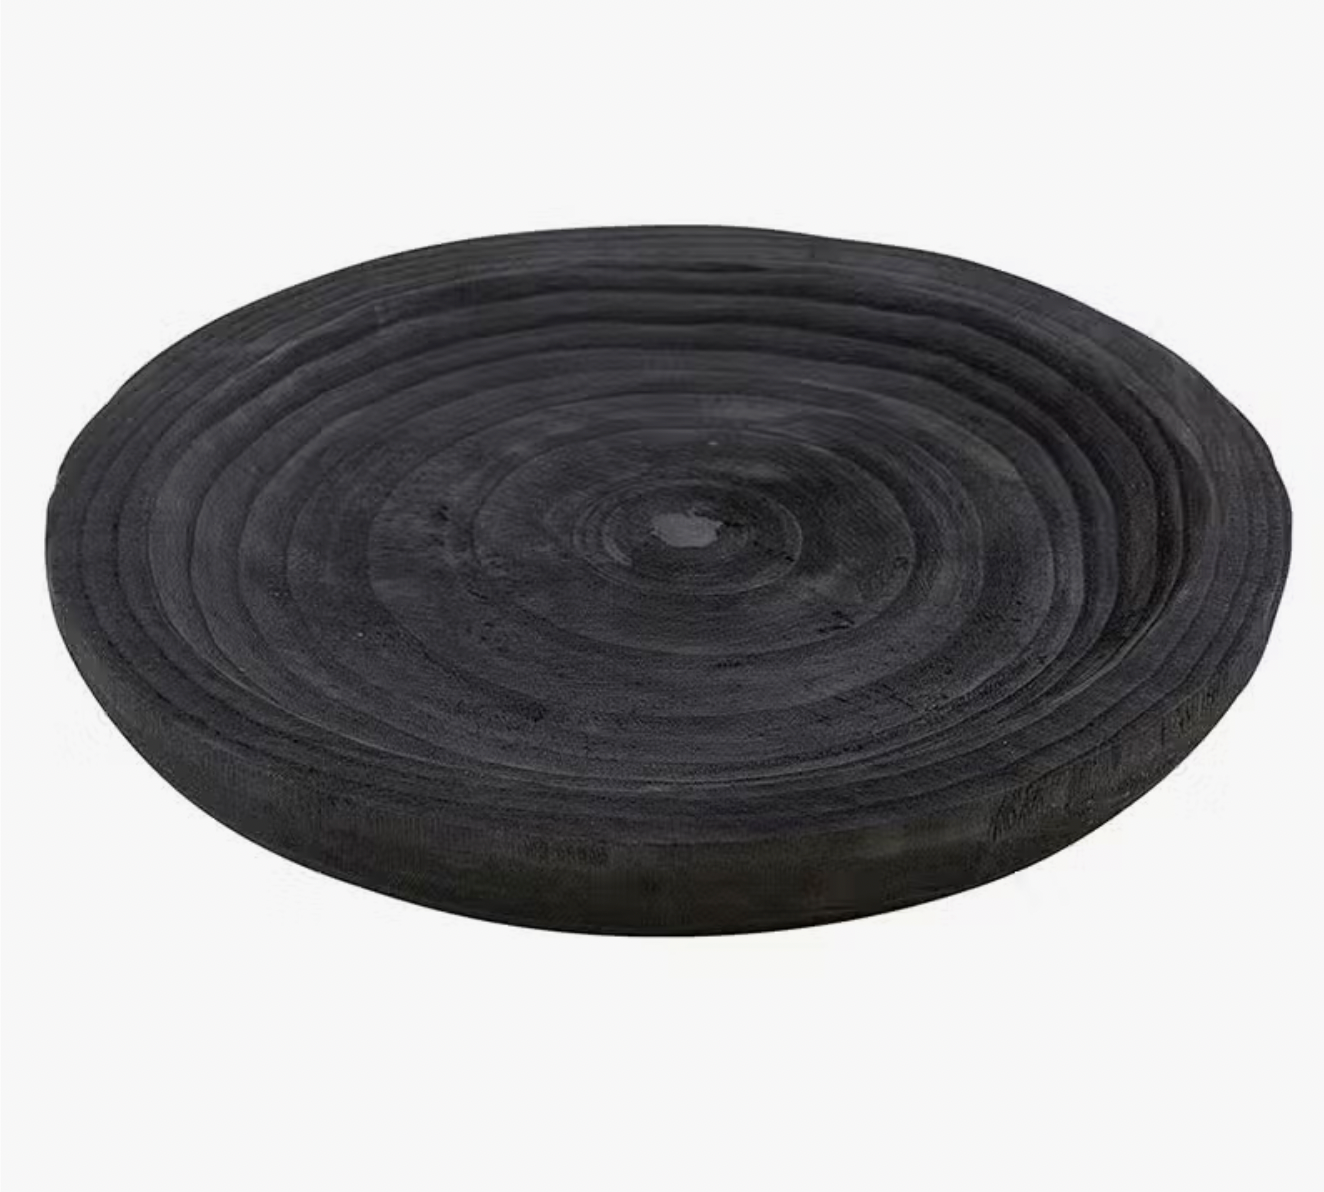 Paulownia Medium Bowl - Black